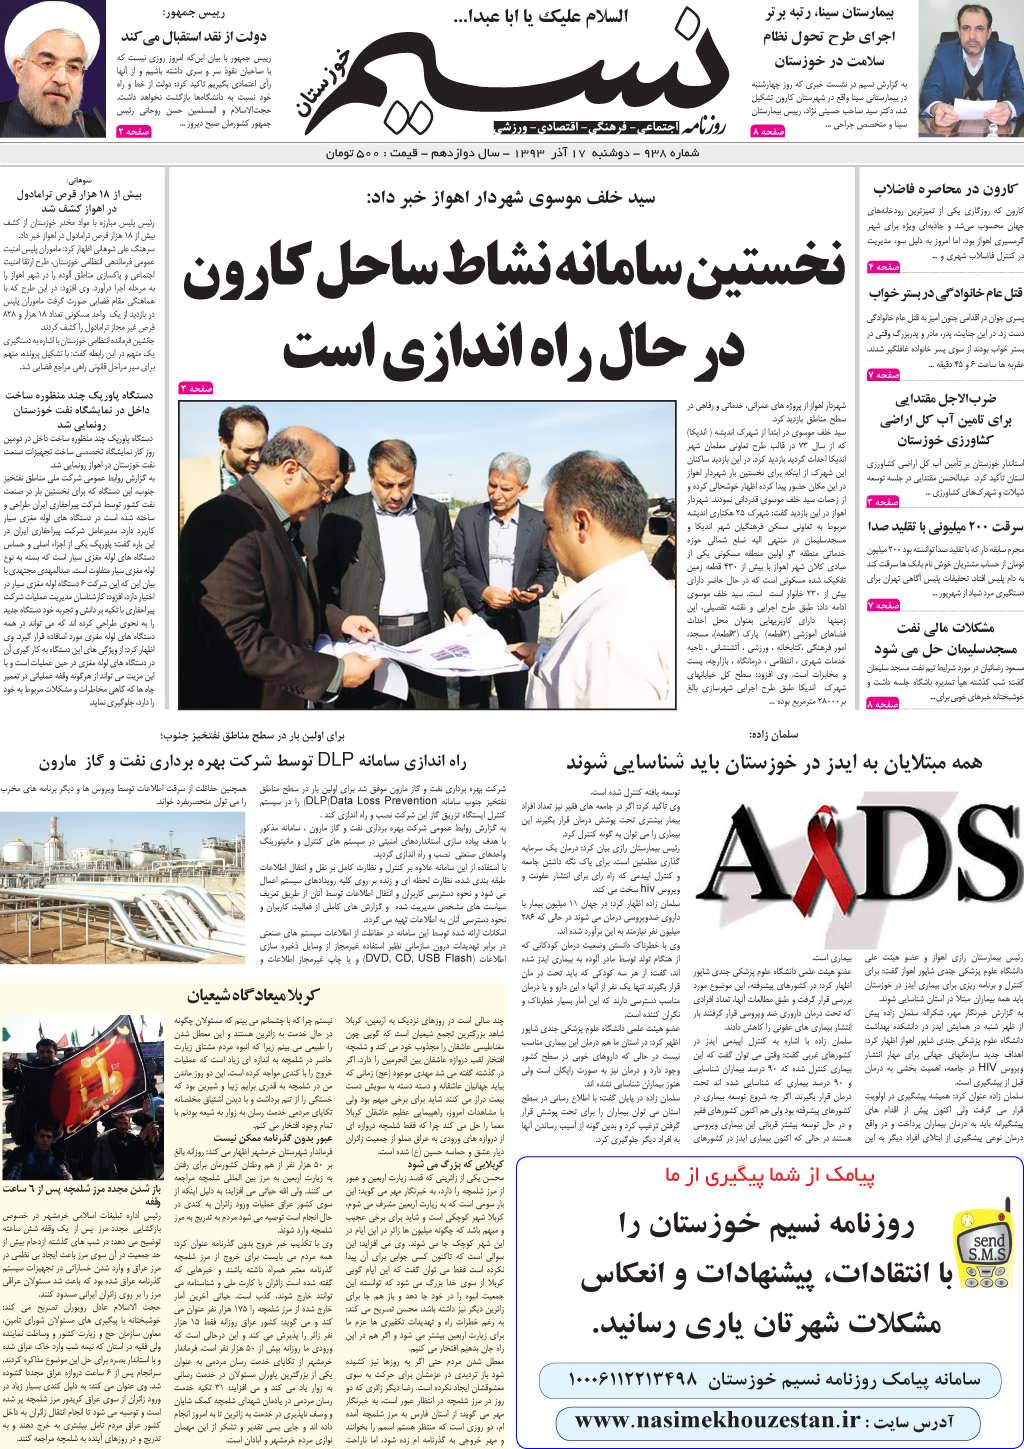 صفحه اصلی روزنامه نسیم شماره 938 